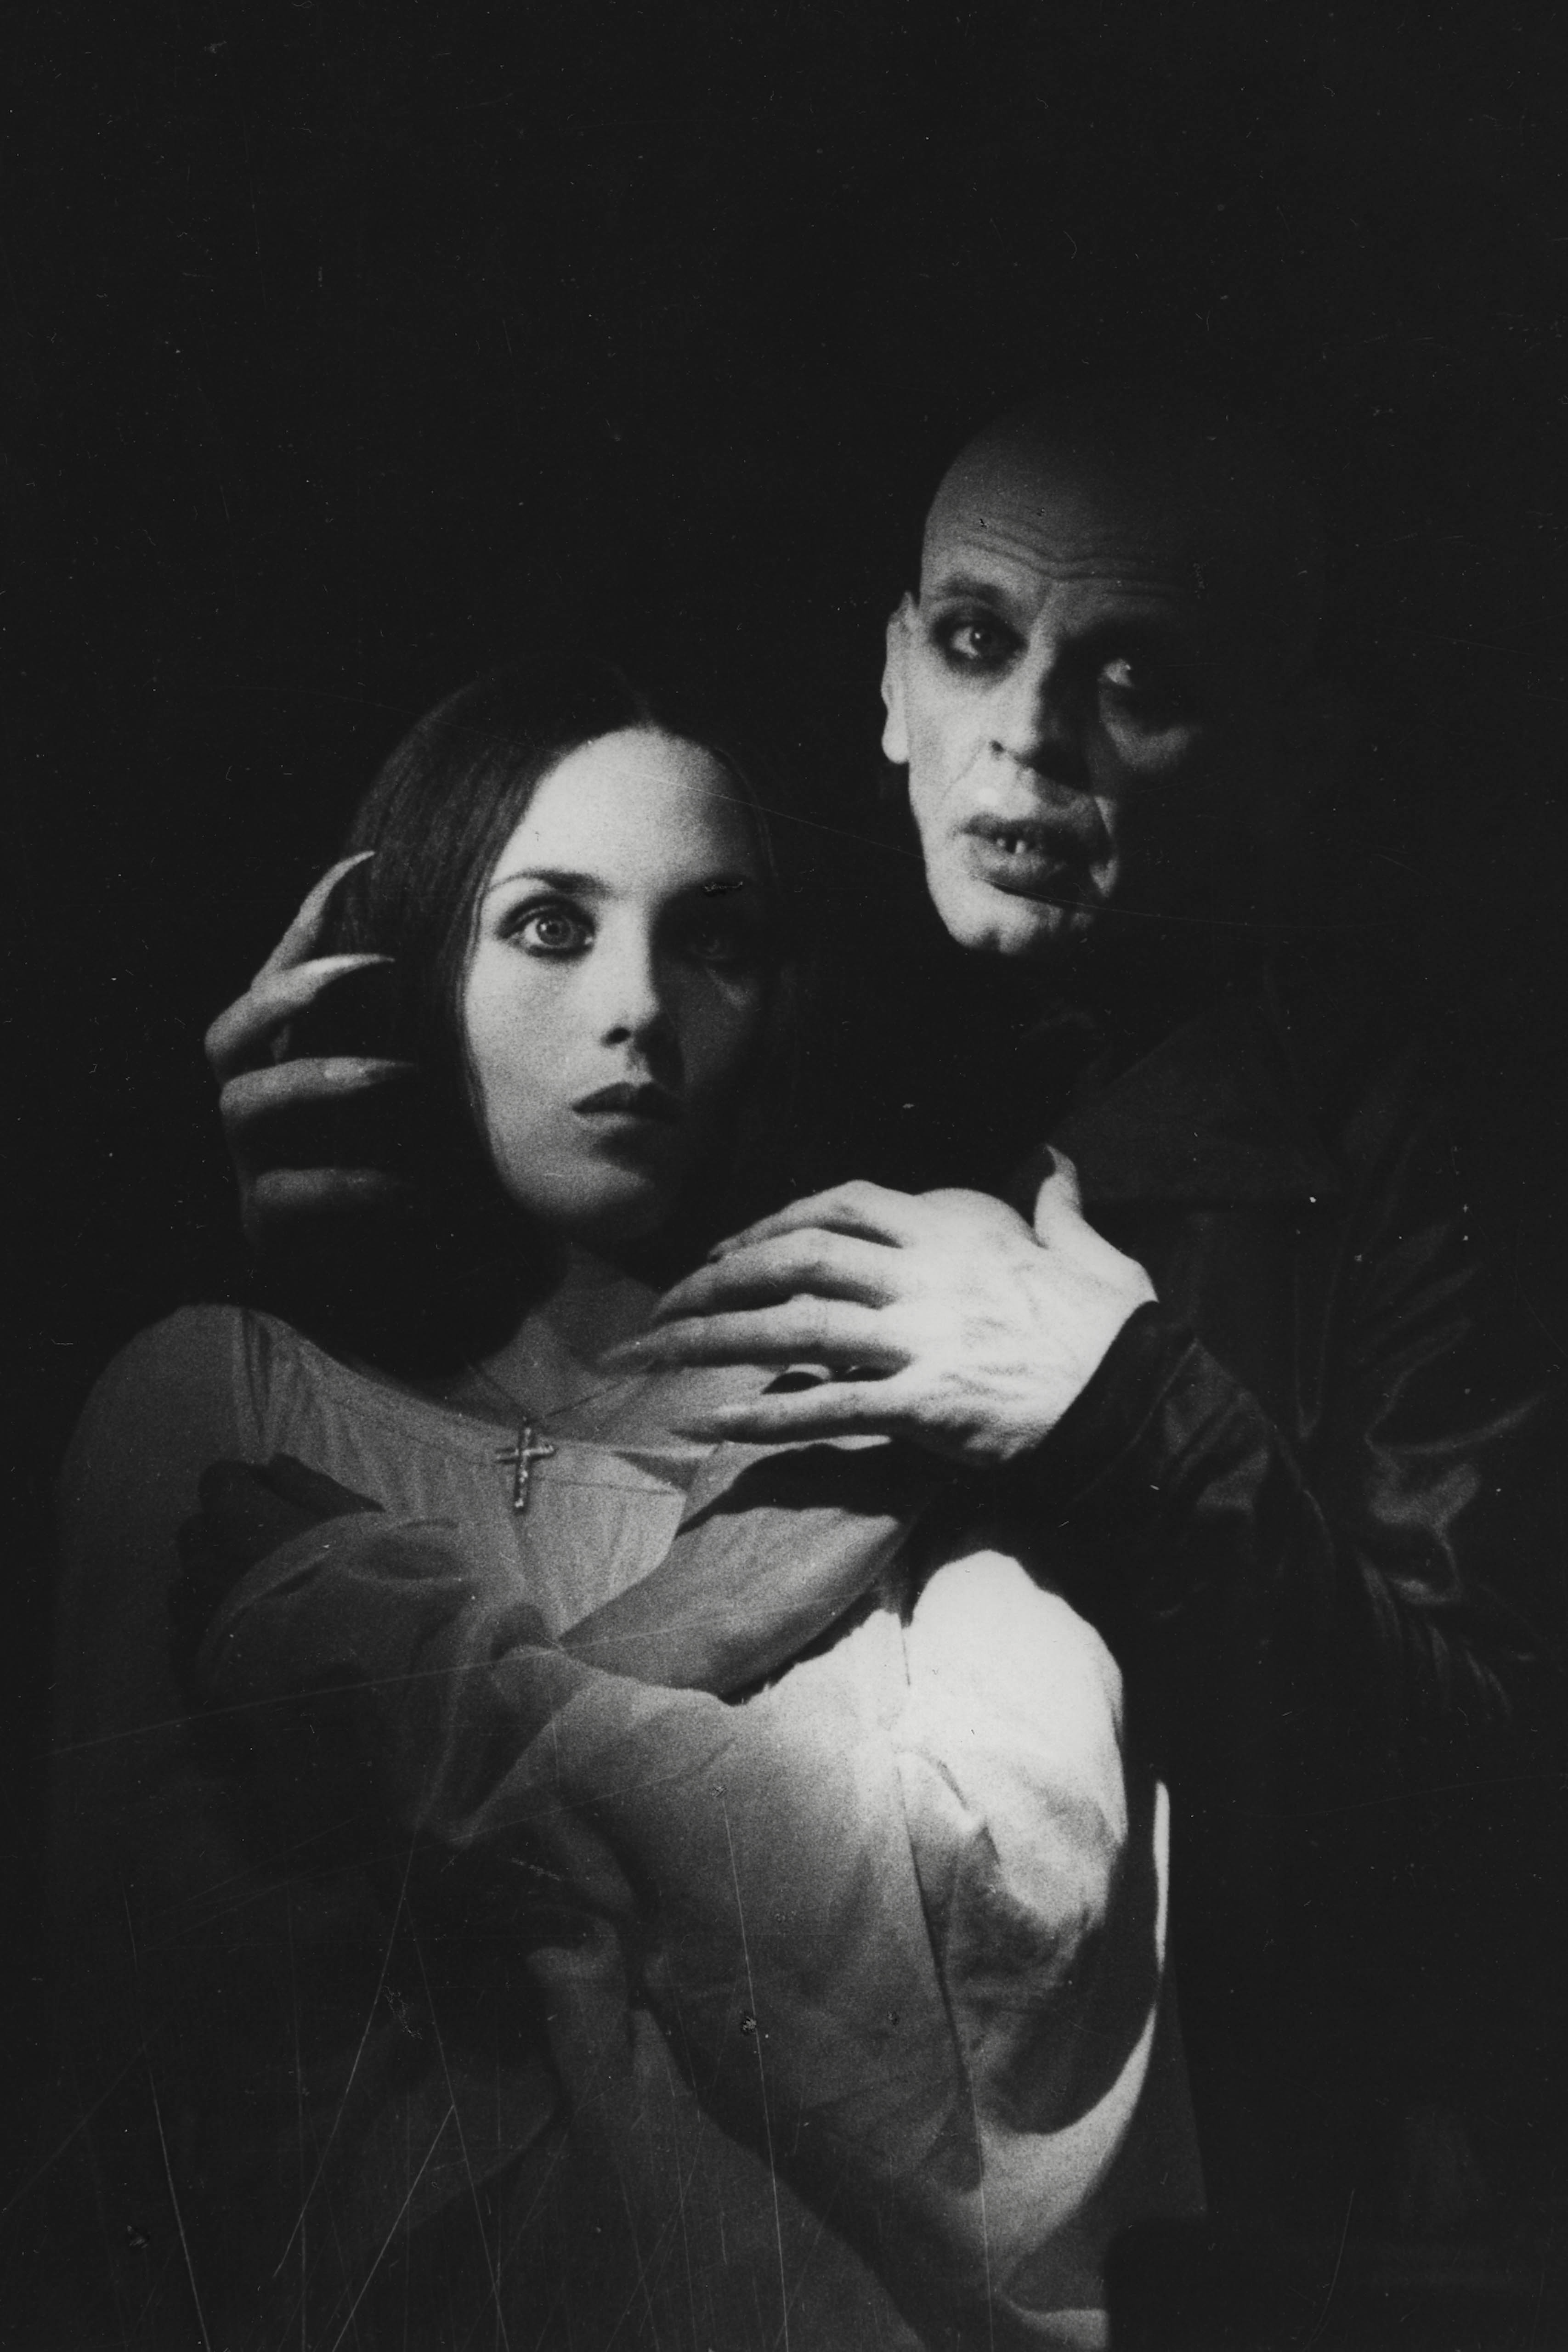 Still from the film Nosferatu – Phantom der Nacht